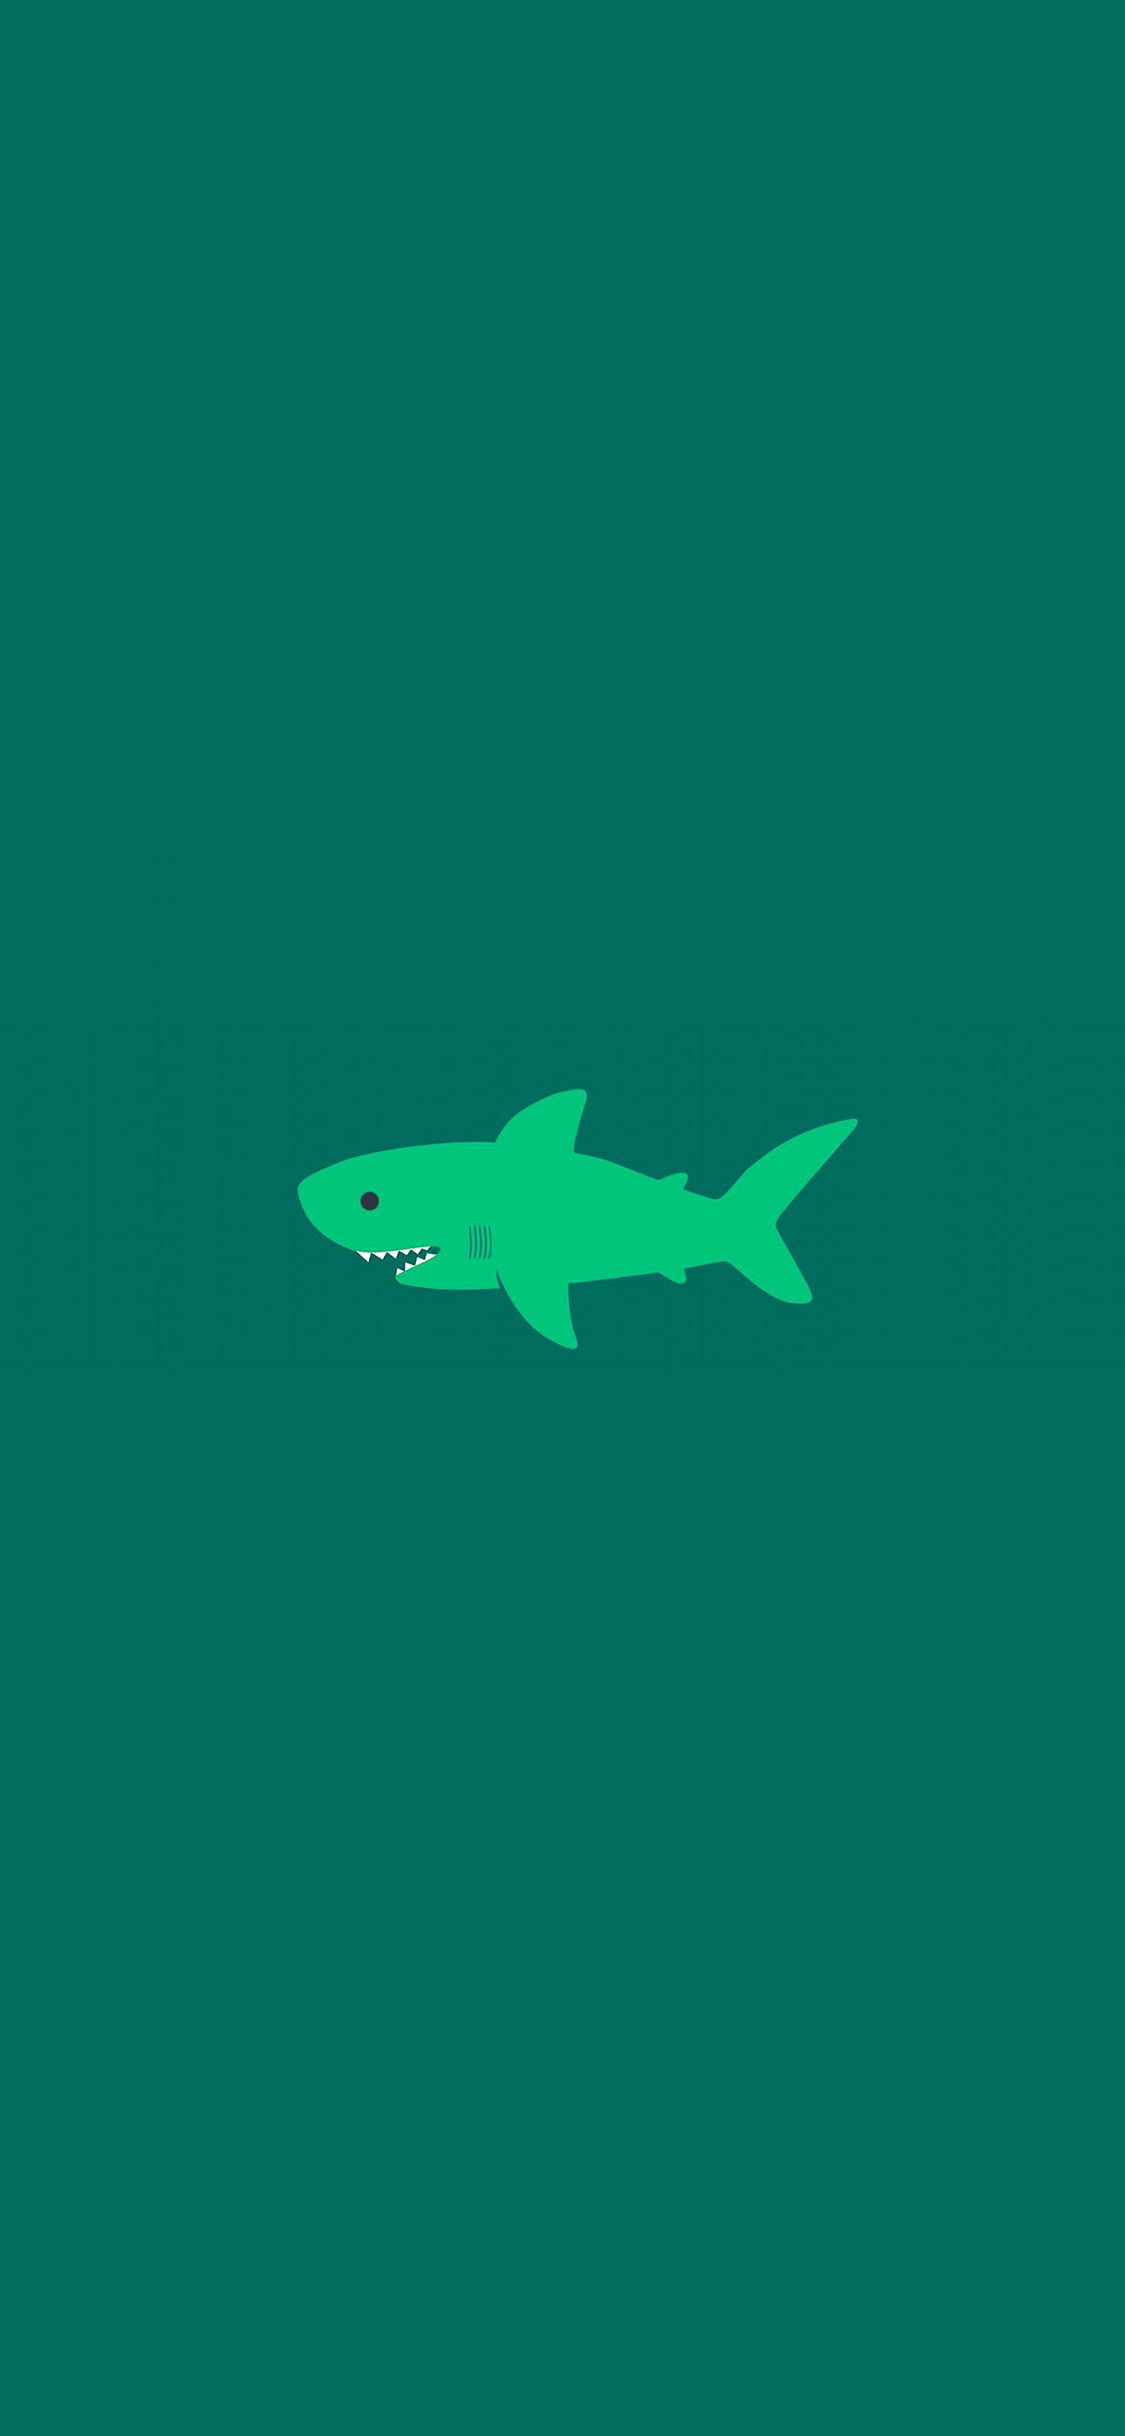 iPhone X wallpaper. little small cute shark green minimal